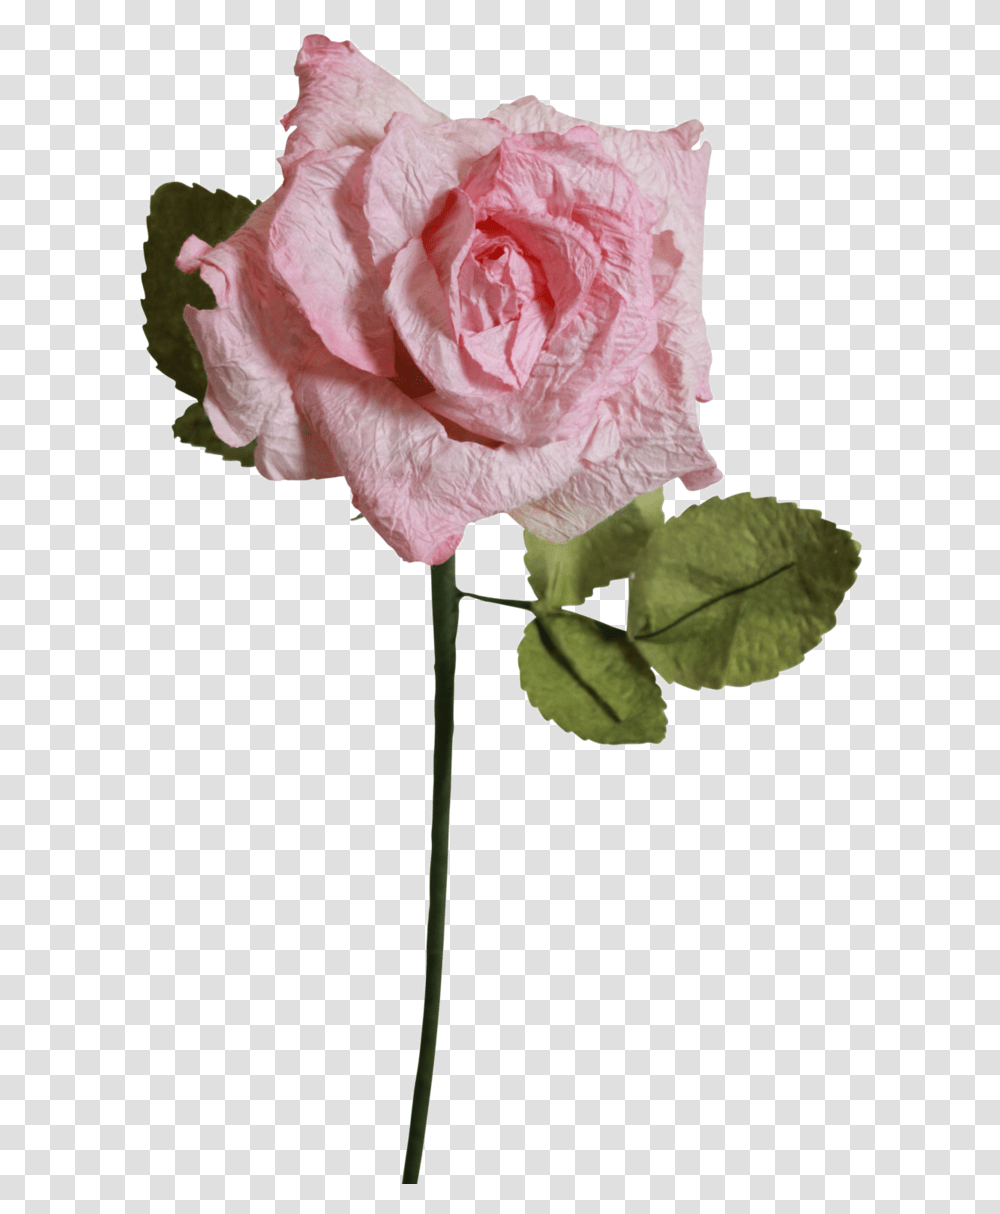 Light Pink Roses Light Pink Pink Rose Clear Background, Plant, Flower, Blossom, Petal Transparent Png